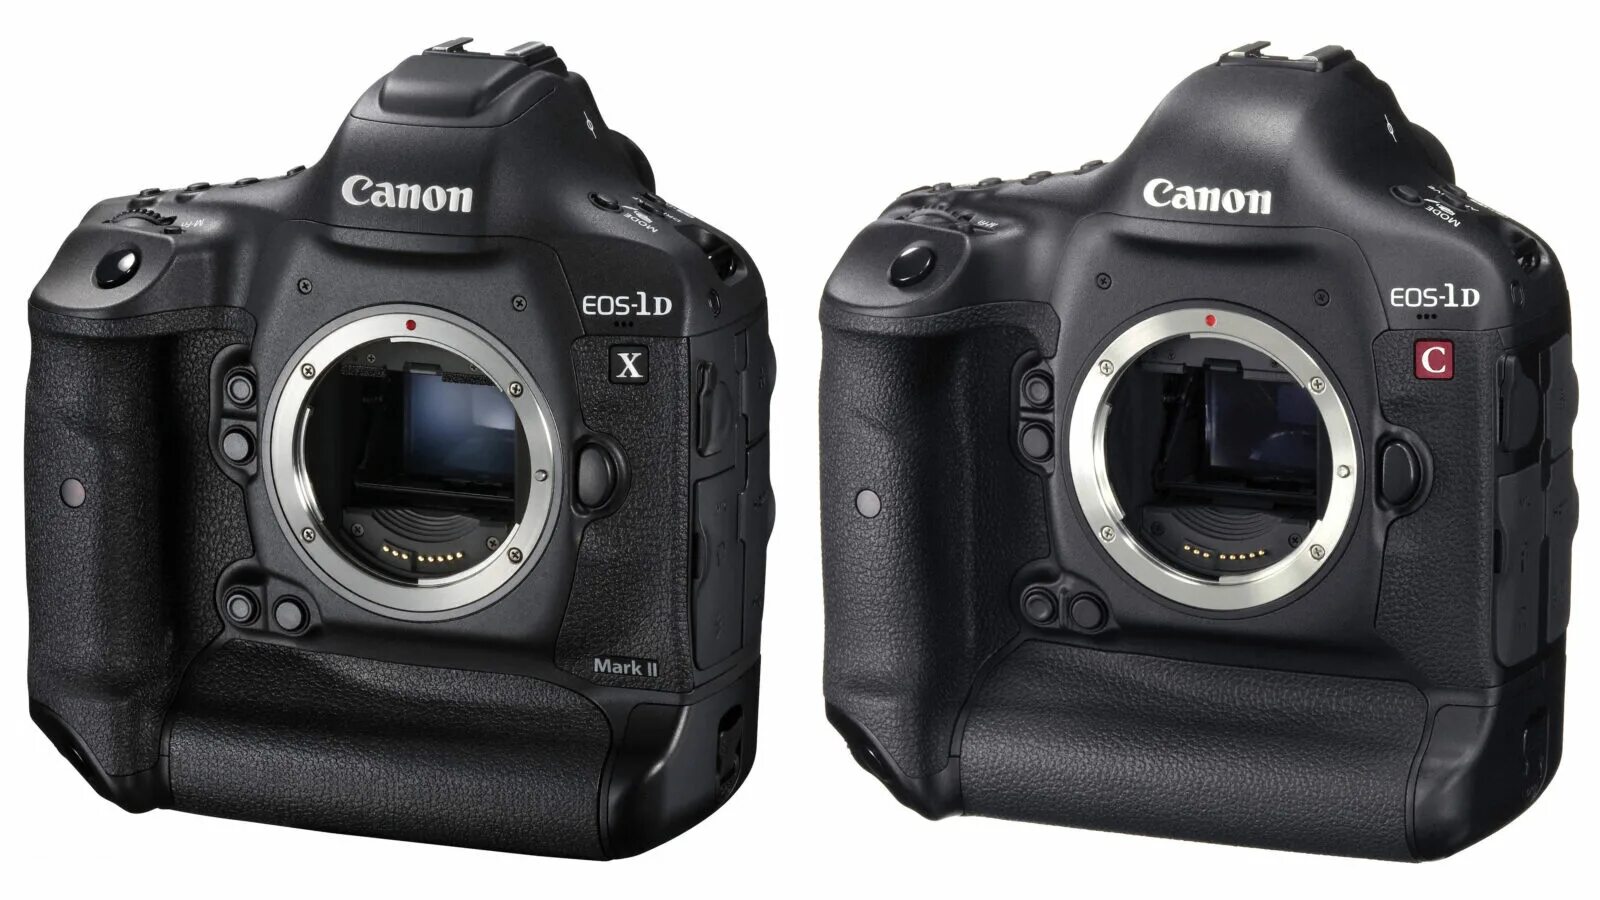 Canon 1d. Canon 1dx Mark III. 1dx Mark II. Canon EOS-1d x Mark II. R5 mark ii